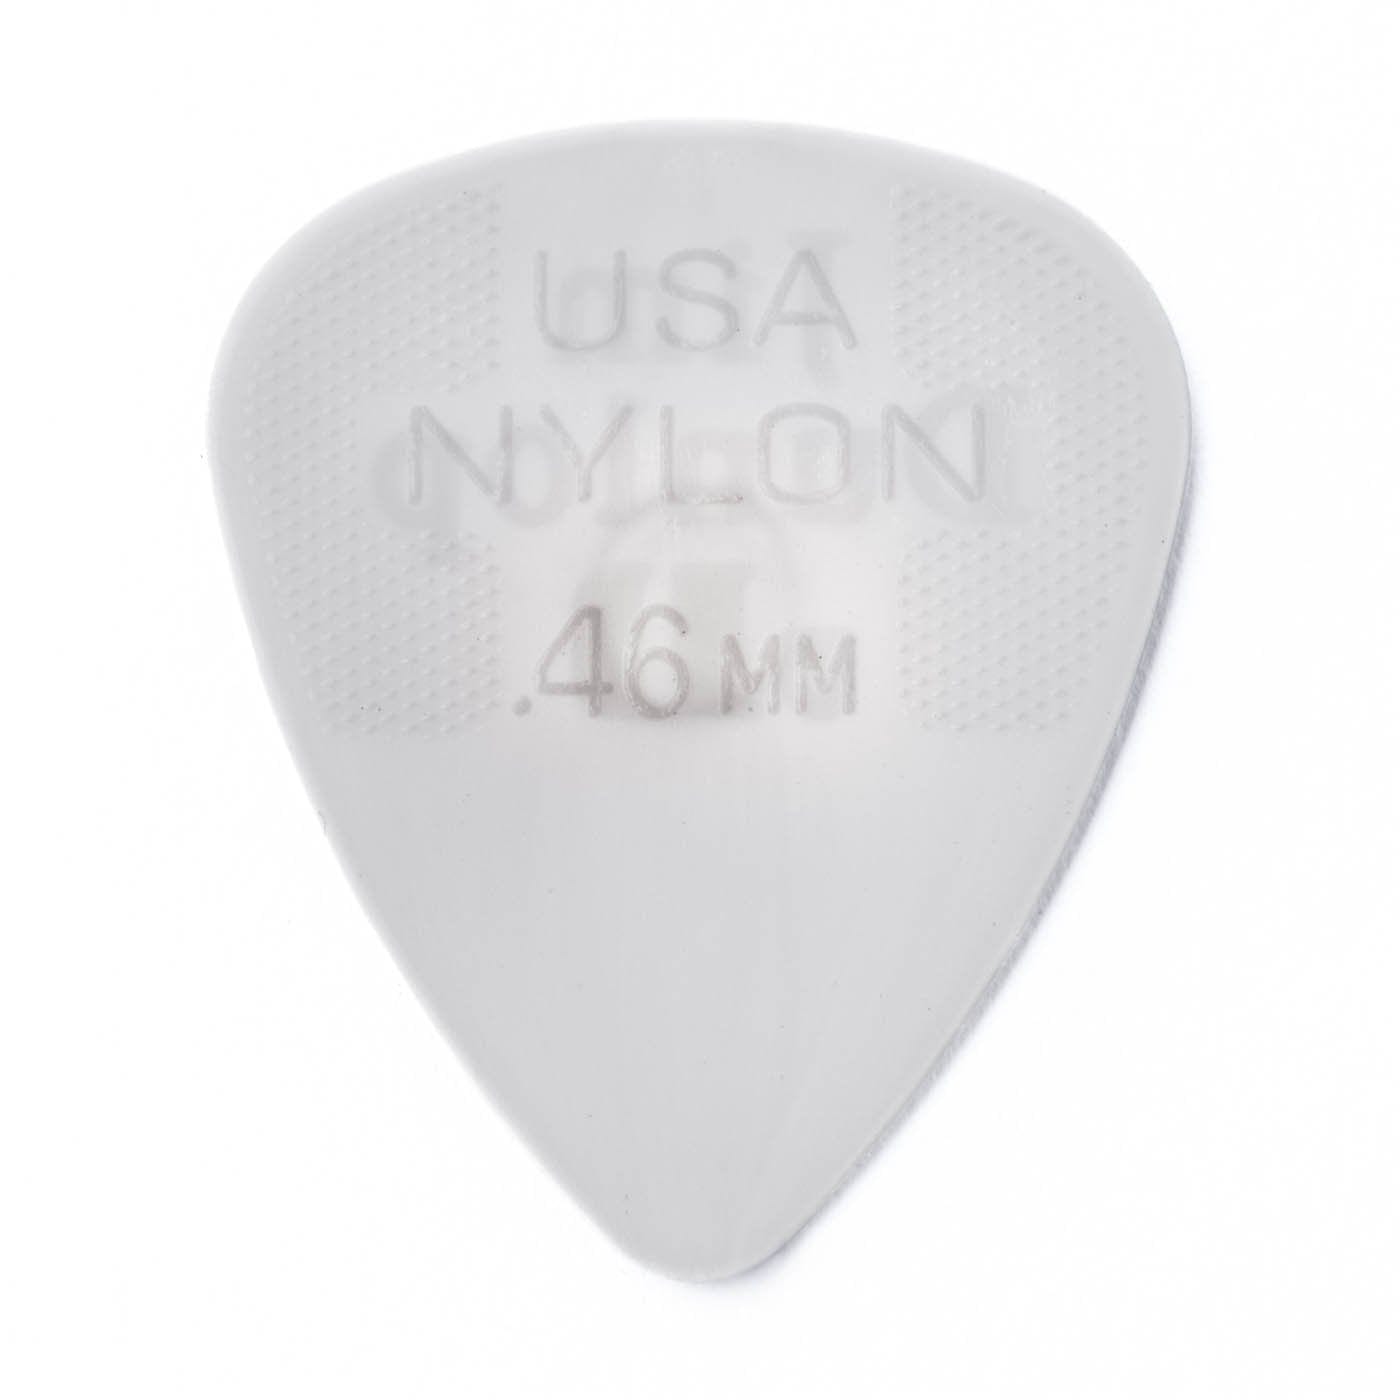 Dunlop 44P46 Nylon Picks (12pk) .46